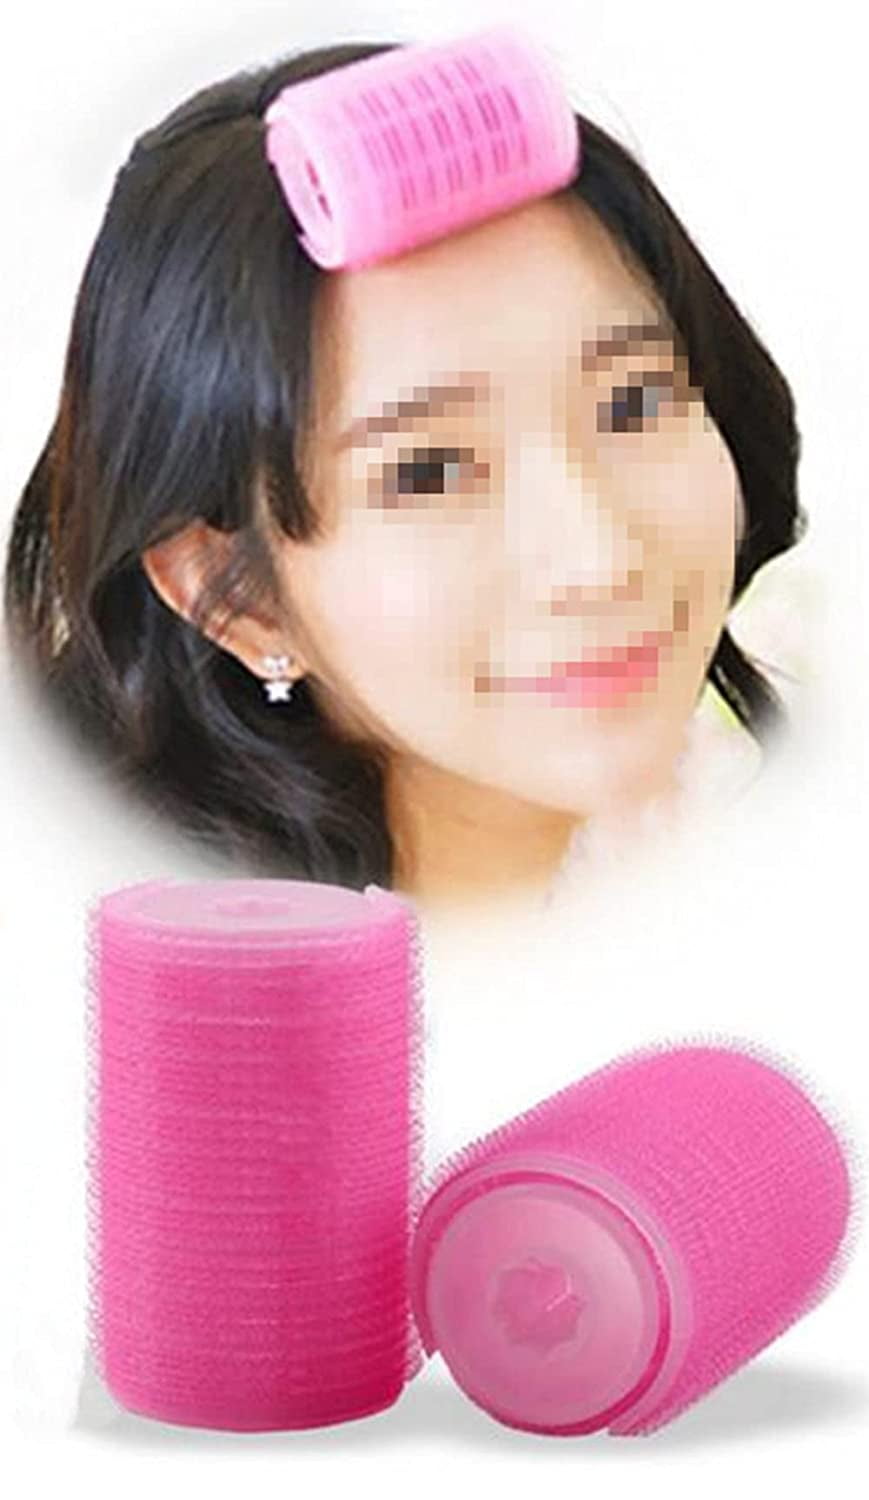 2Pcs/Set Plastic Hair Rollers Curlers Bangs Self-Adhesive Hair Volume Hair  Curling Styling Tools Magic Women DIY Makeup Tools S 